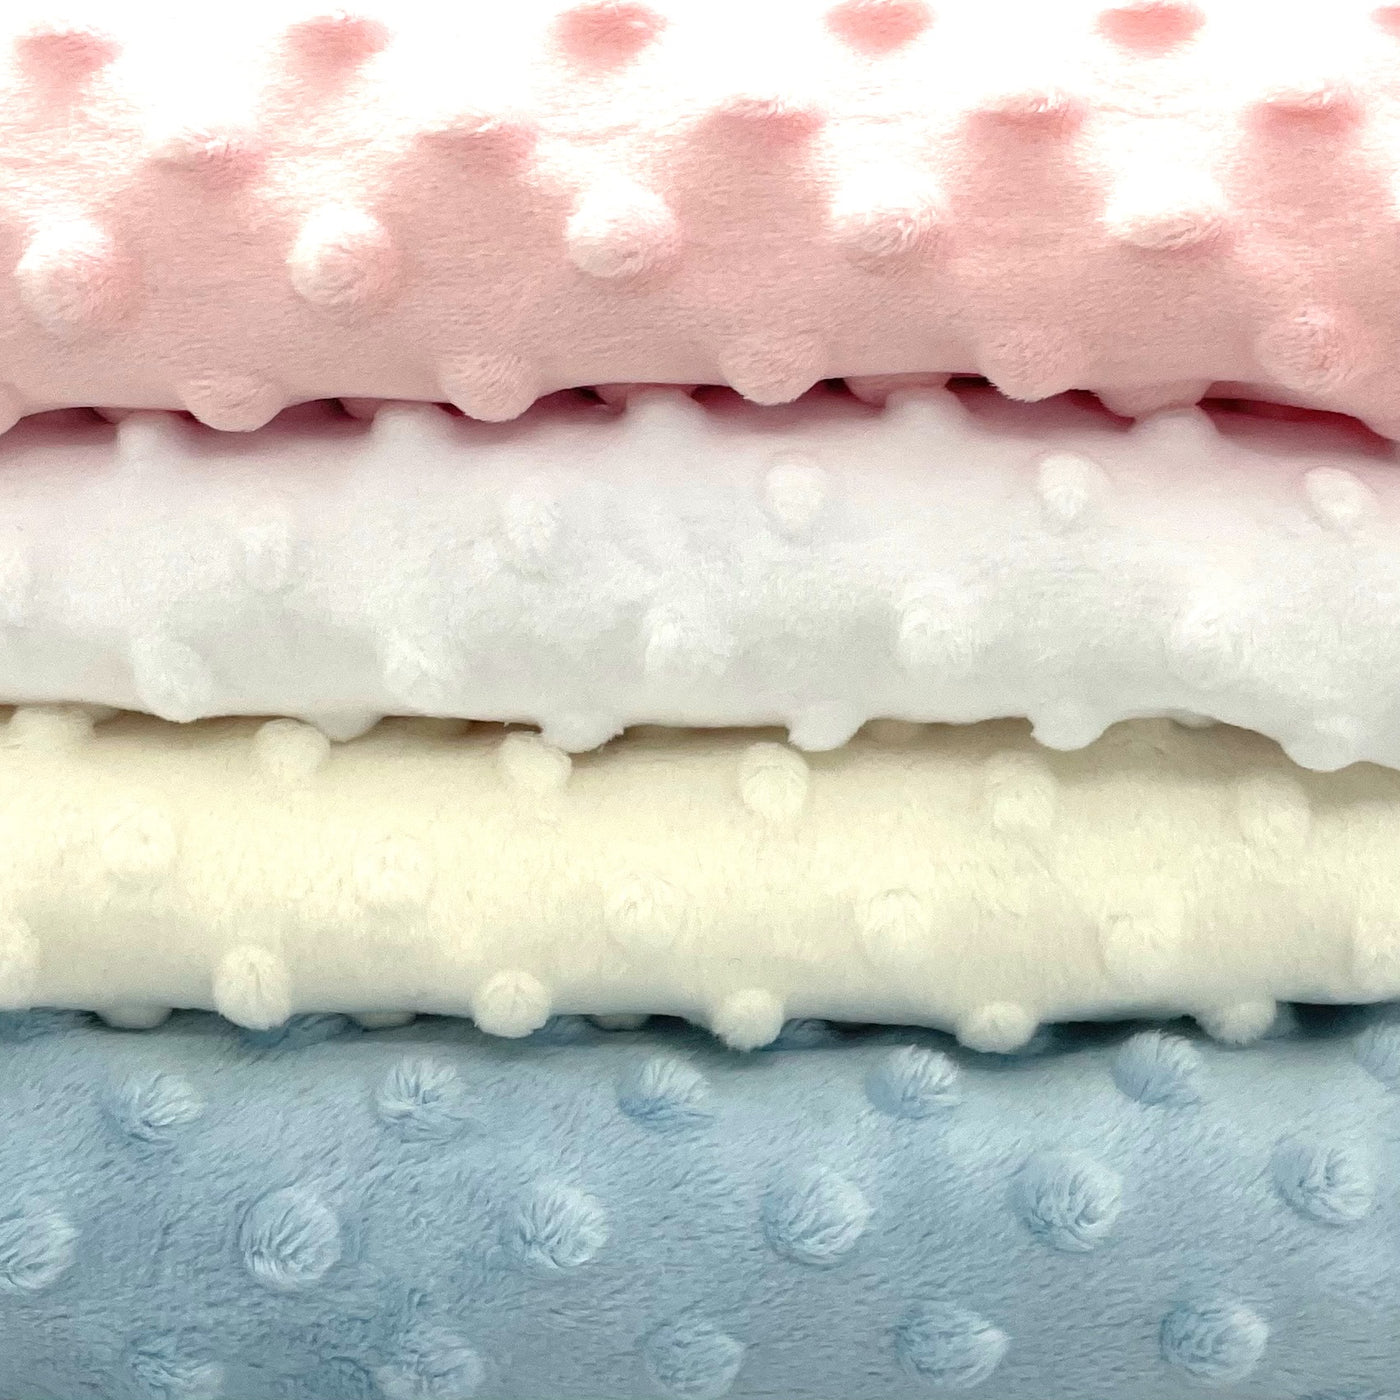 Fat quarter bundle of four colours of dimple fleece.